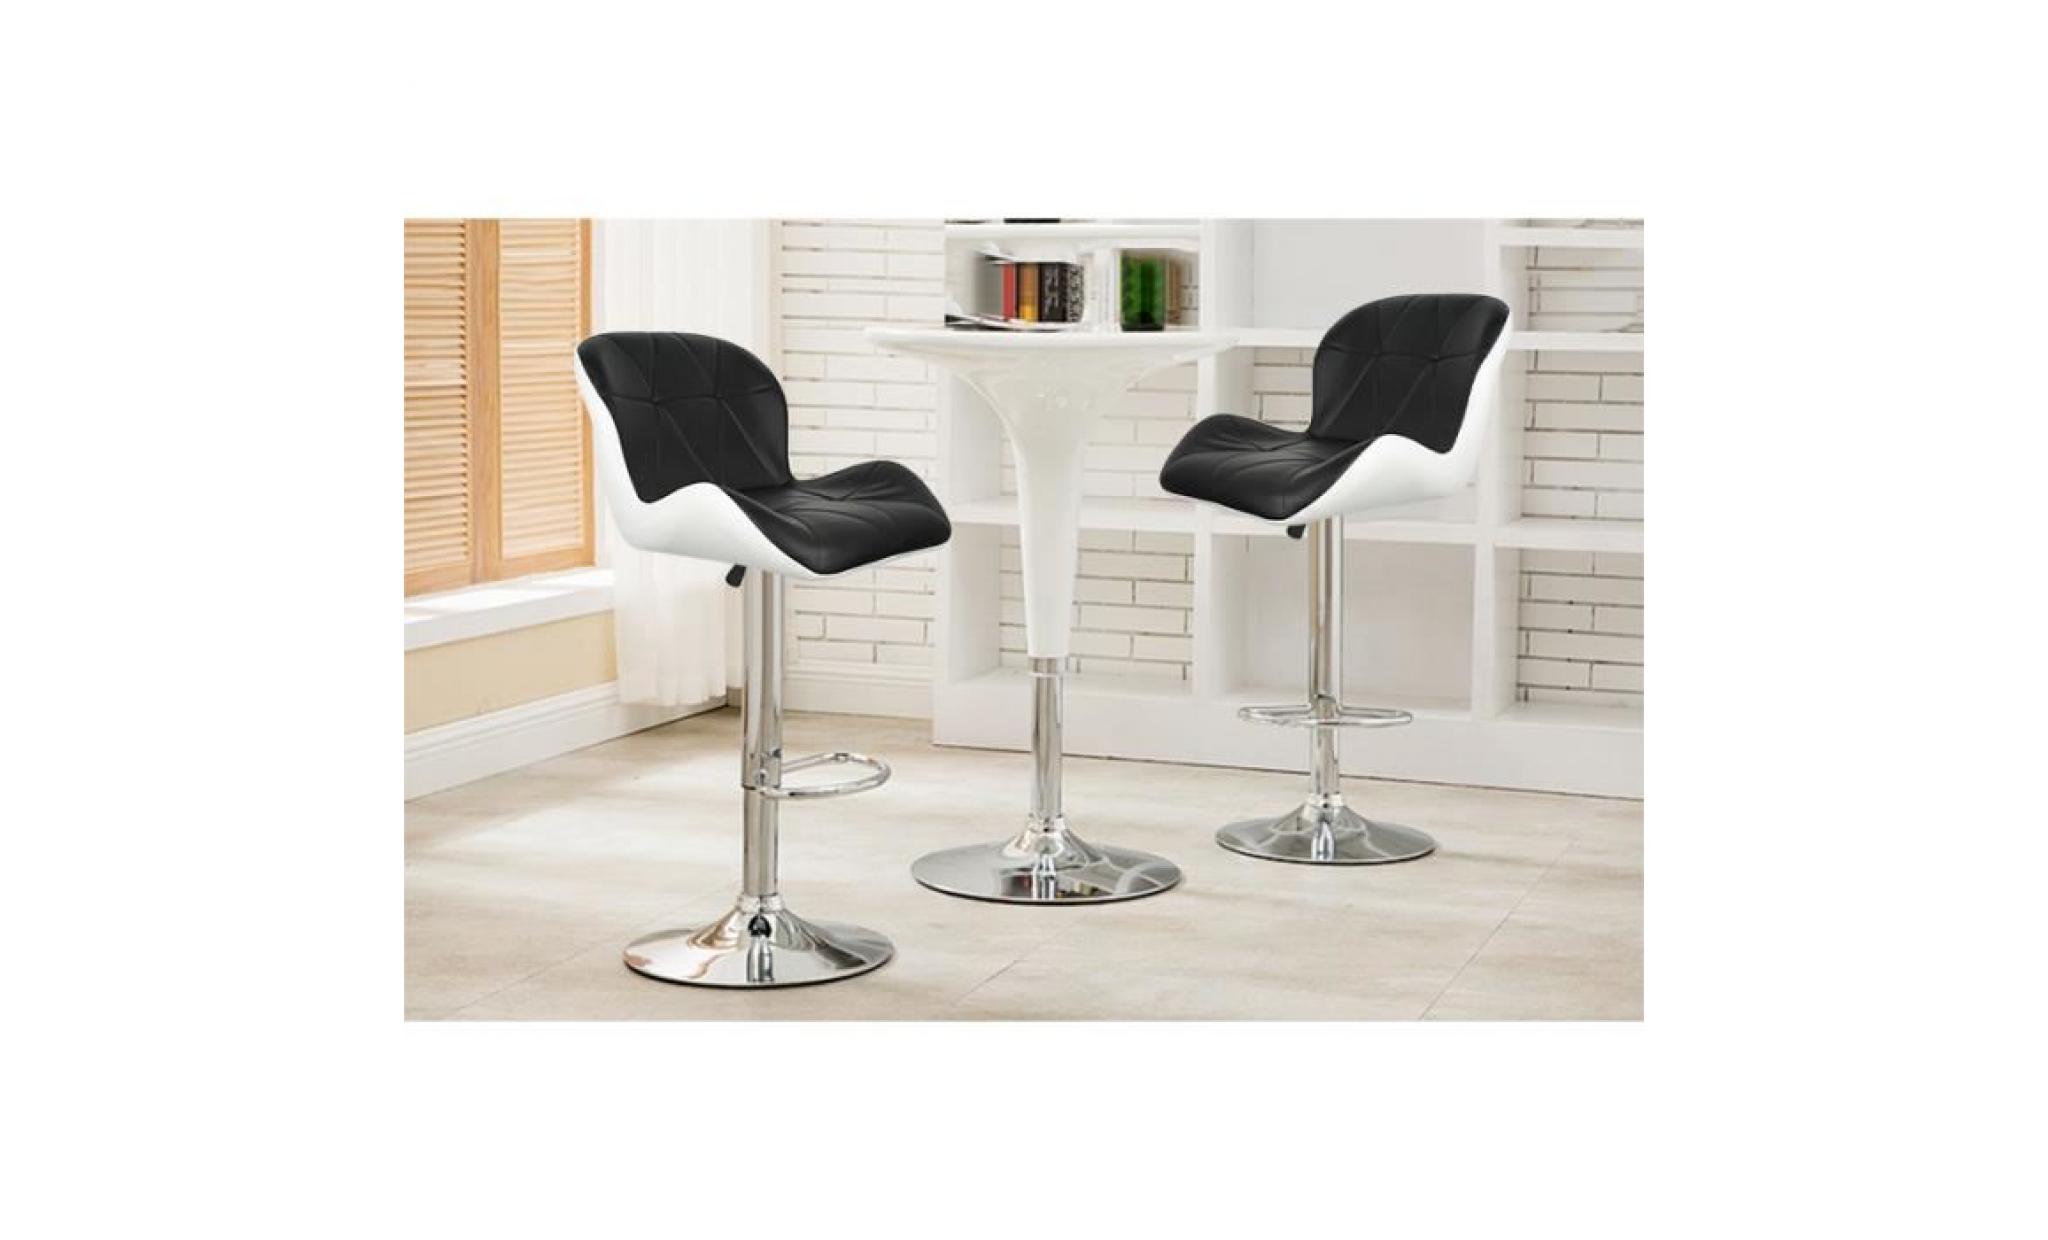 4x tabourets de bar,chaise moderne stools À la cuisine en faux cuir nouvelle chaise pu cuir noir+blanc pas cher